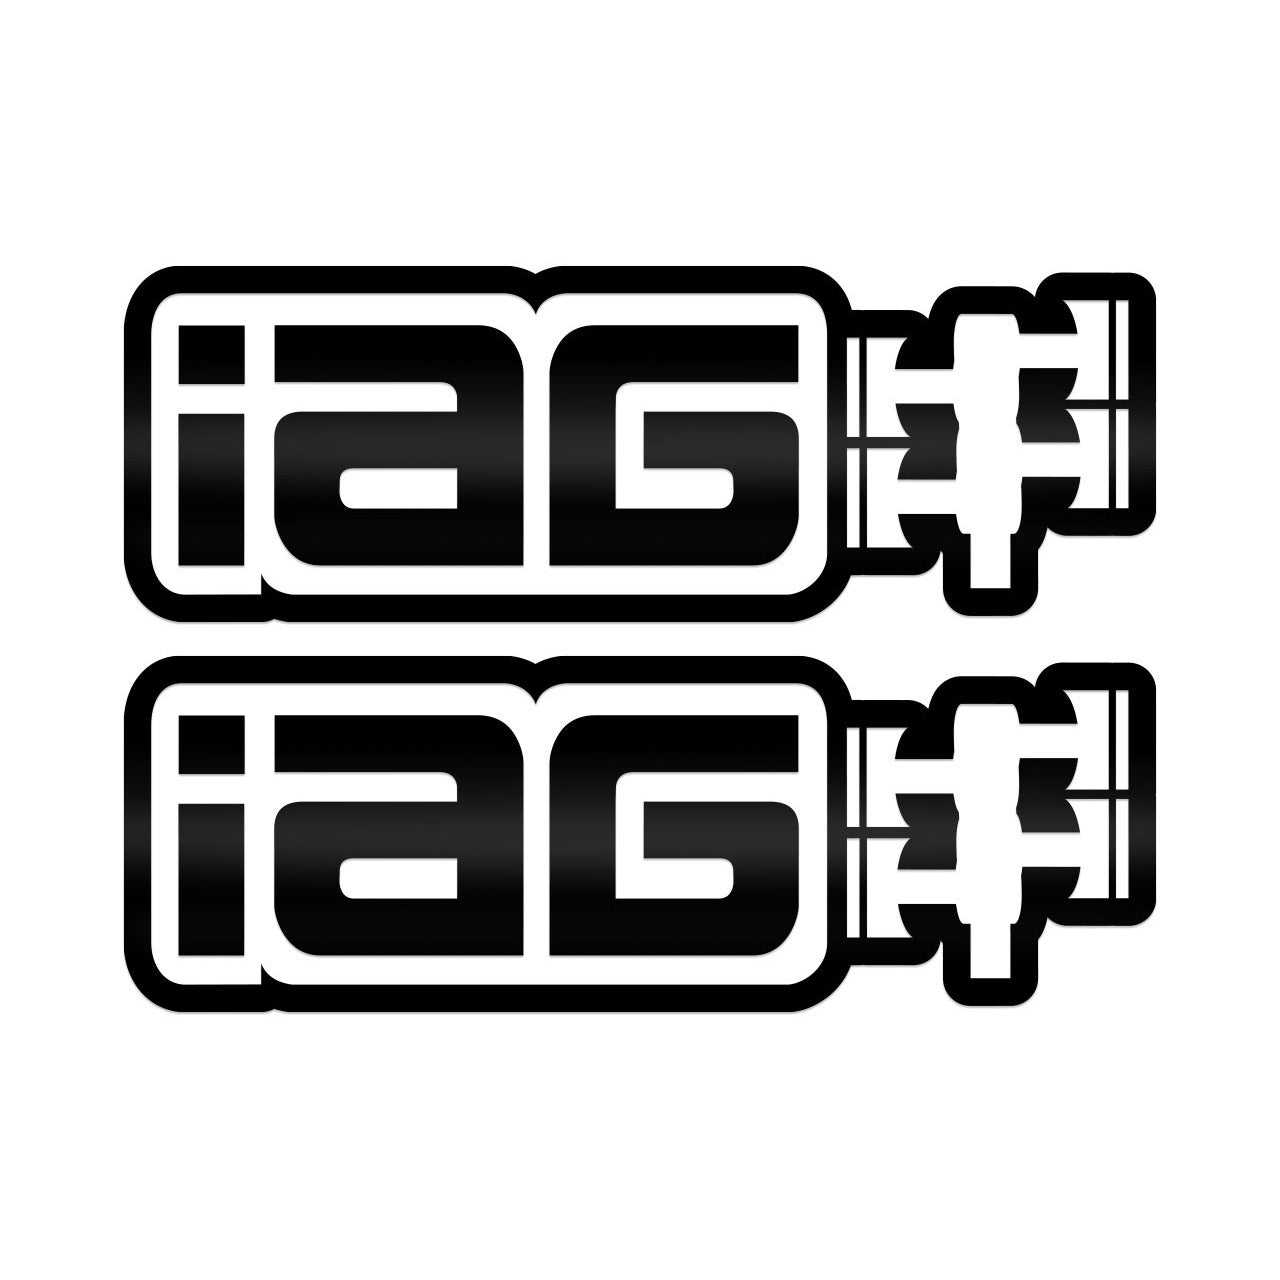 IAG Performance, IAG 20" Gloss Black Die Cut Sticker - Sold as 1 Pair.